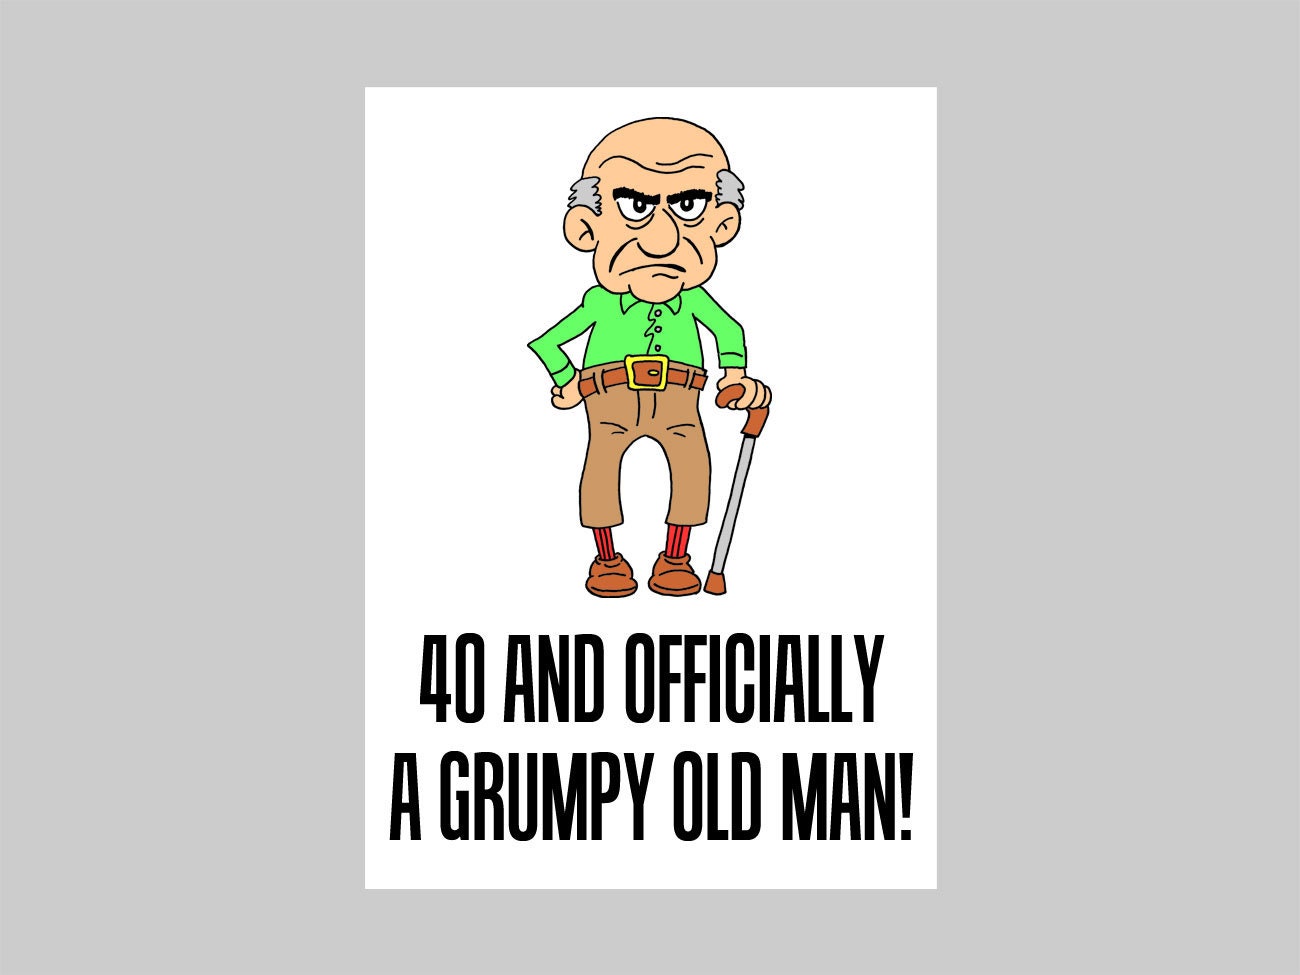 grumpy old man cartoon character